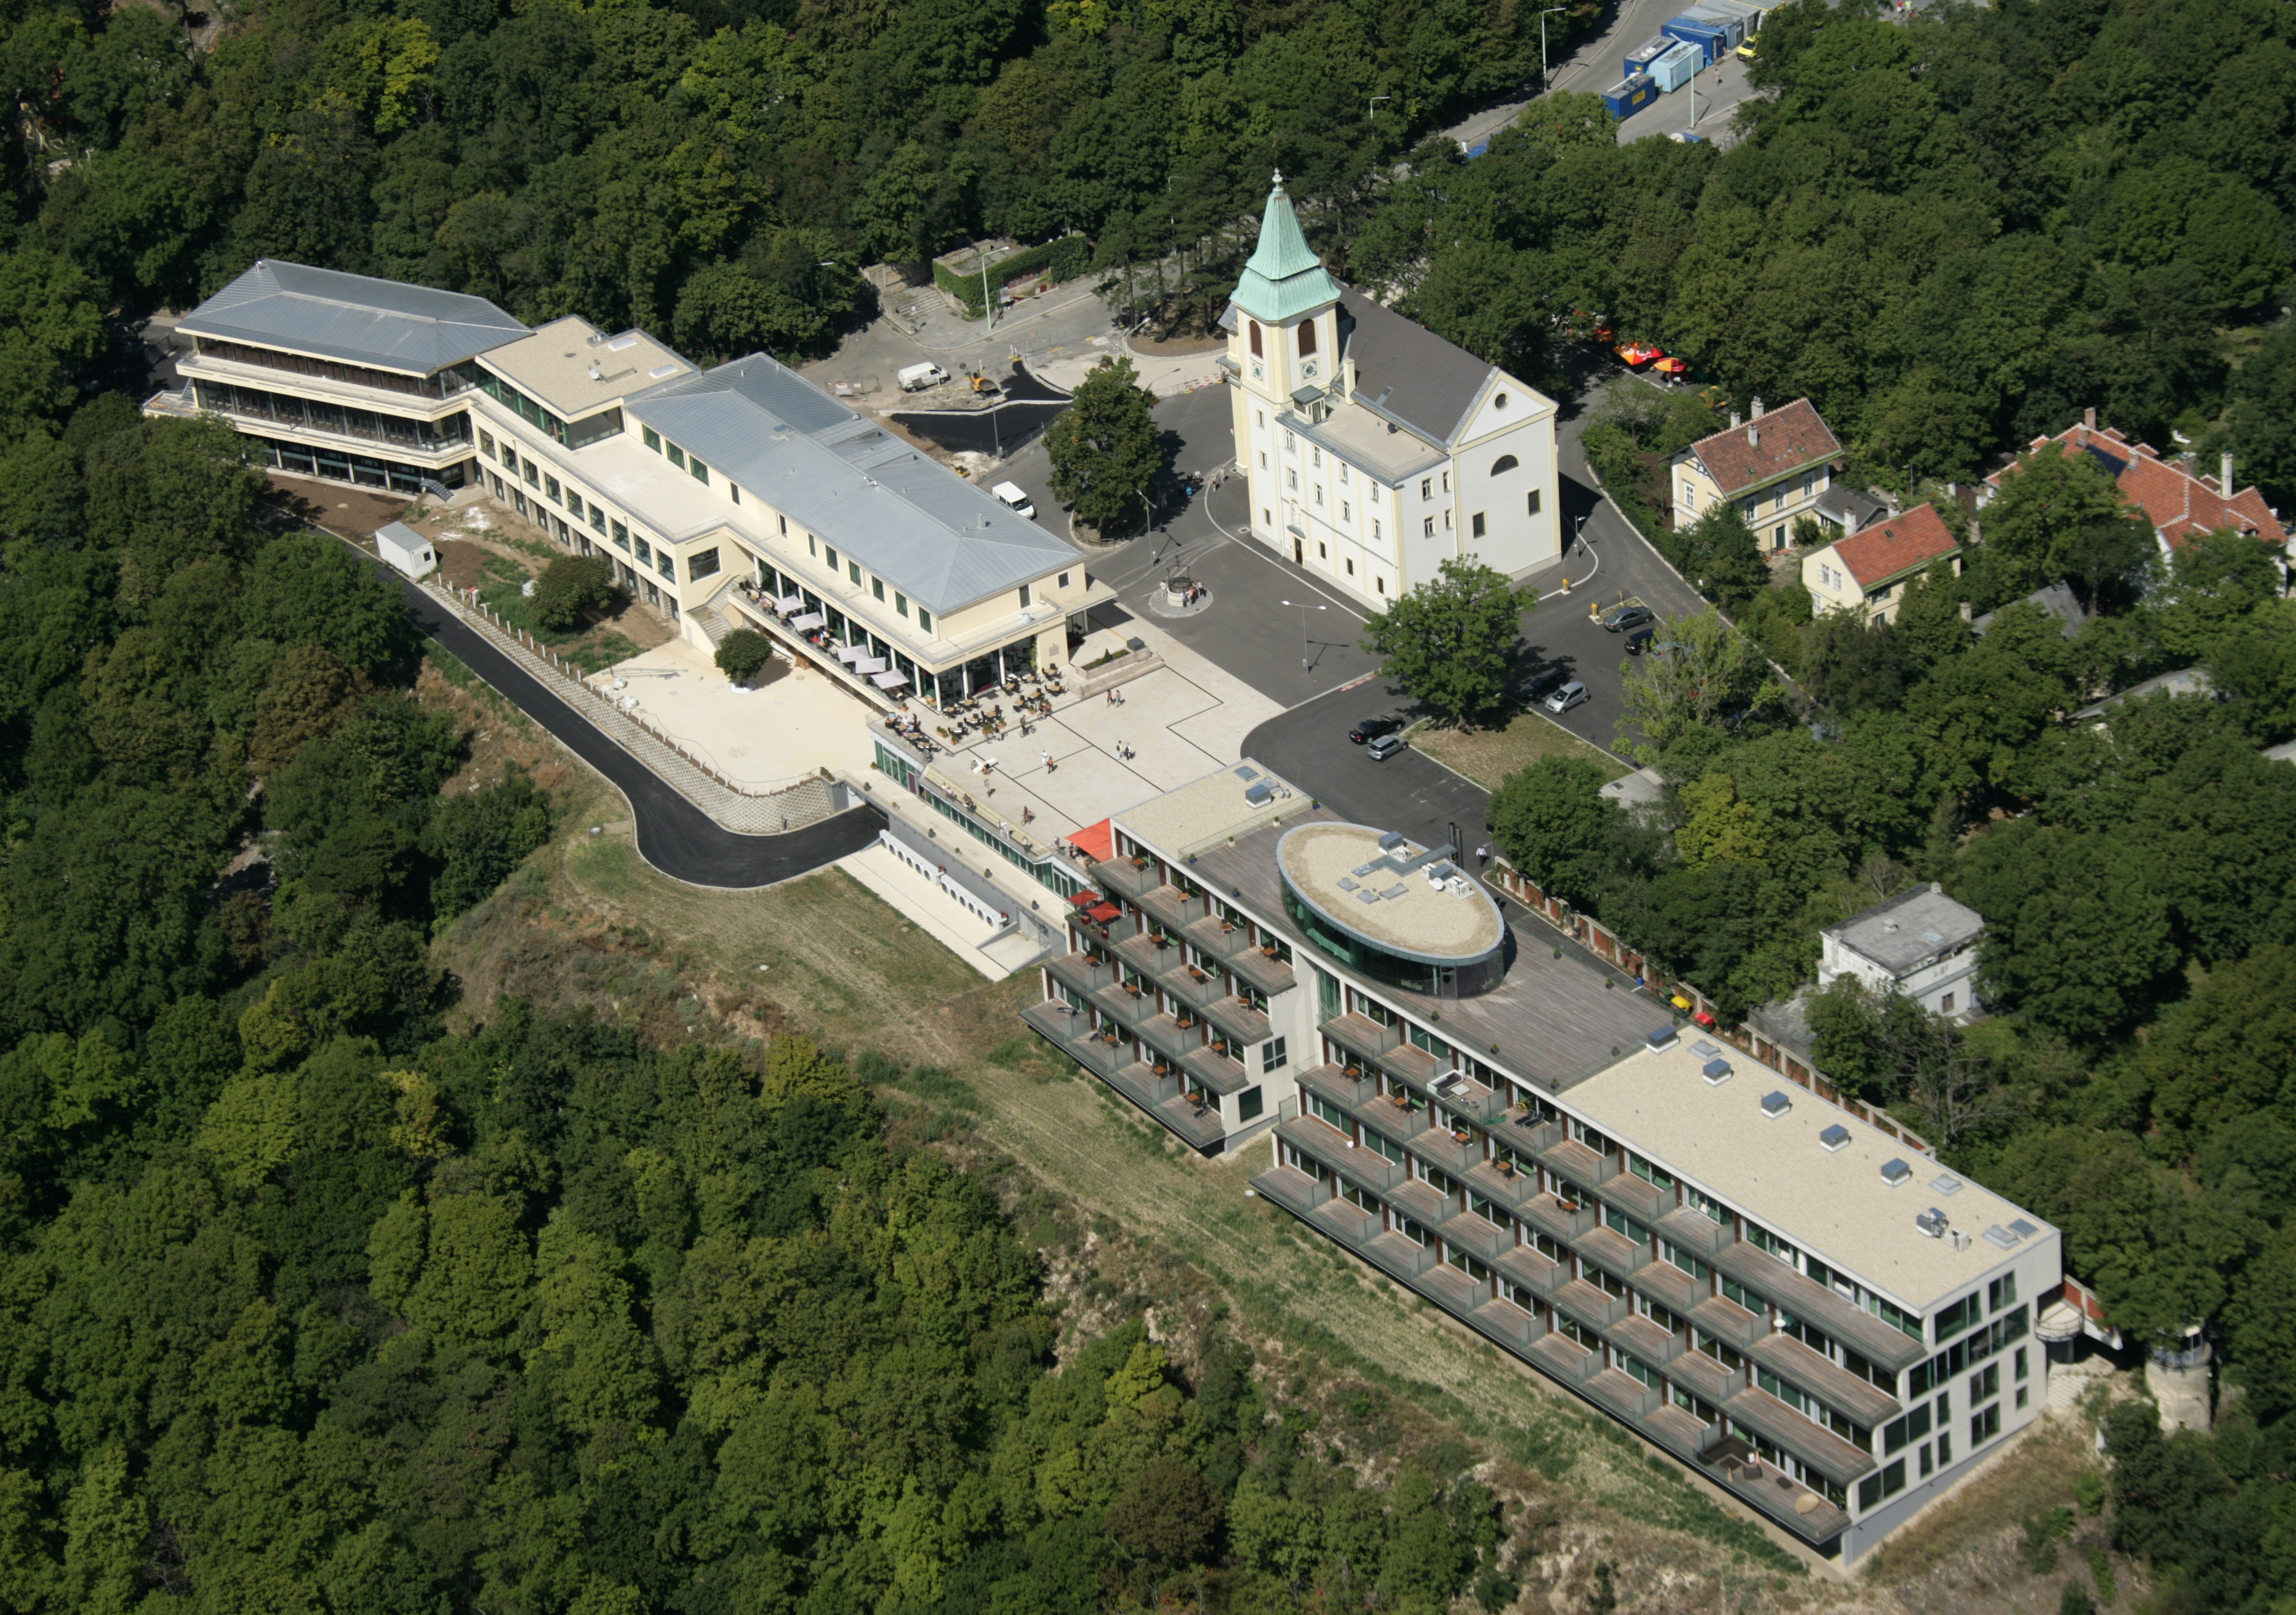 Hotel Kahlenberg - Byggearbejde